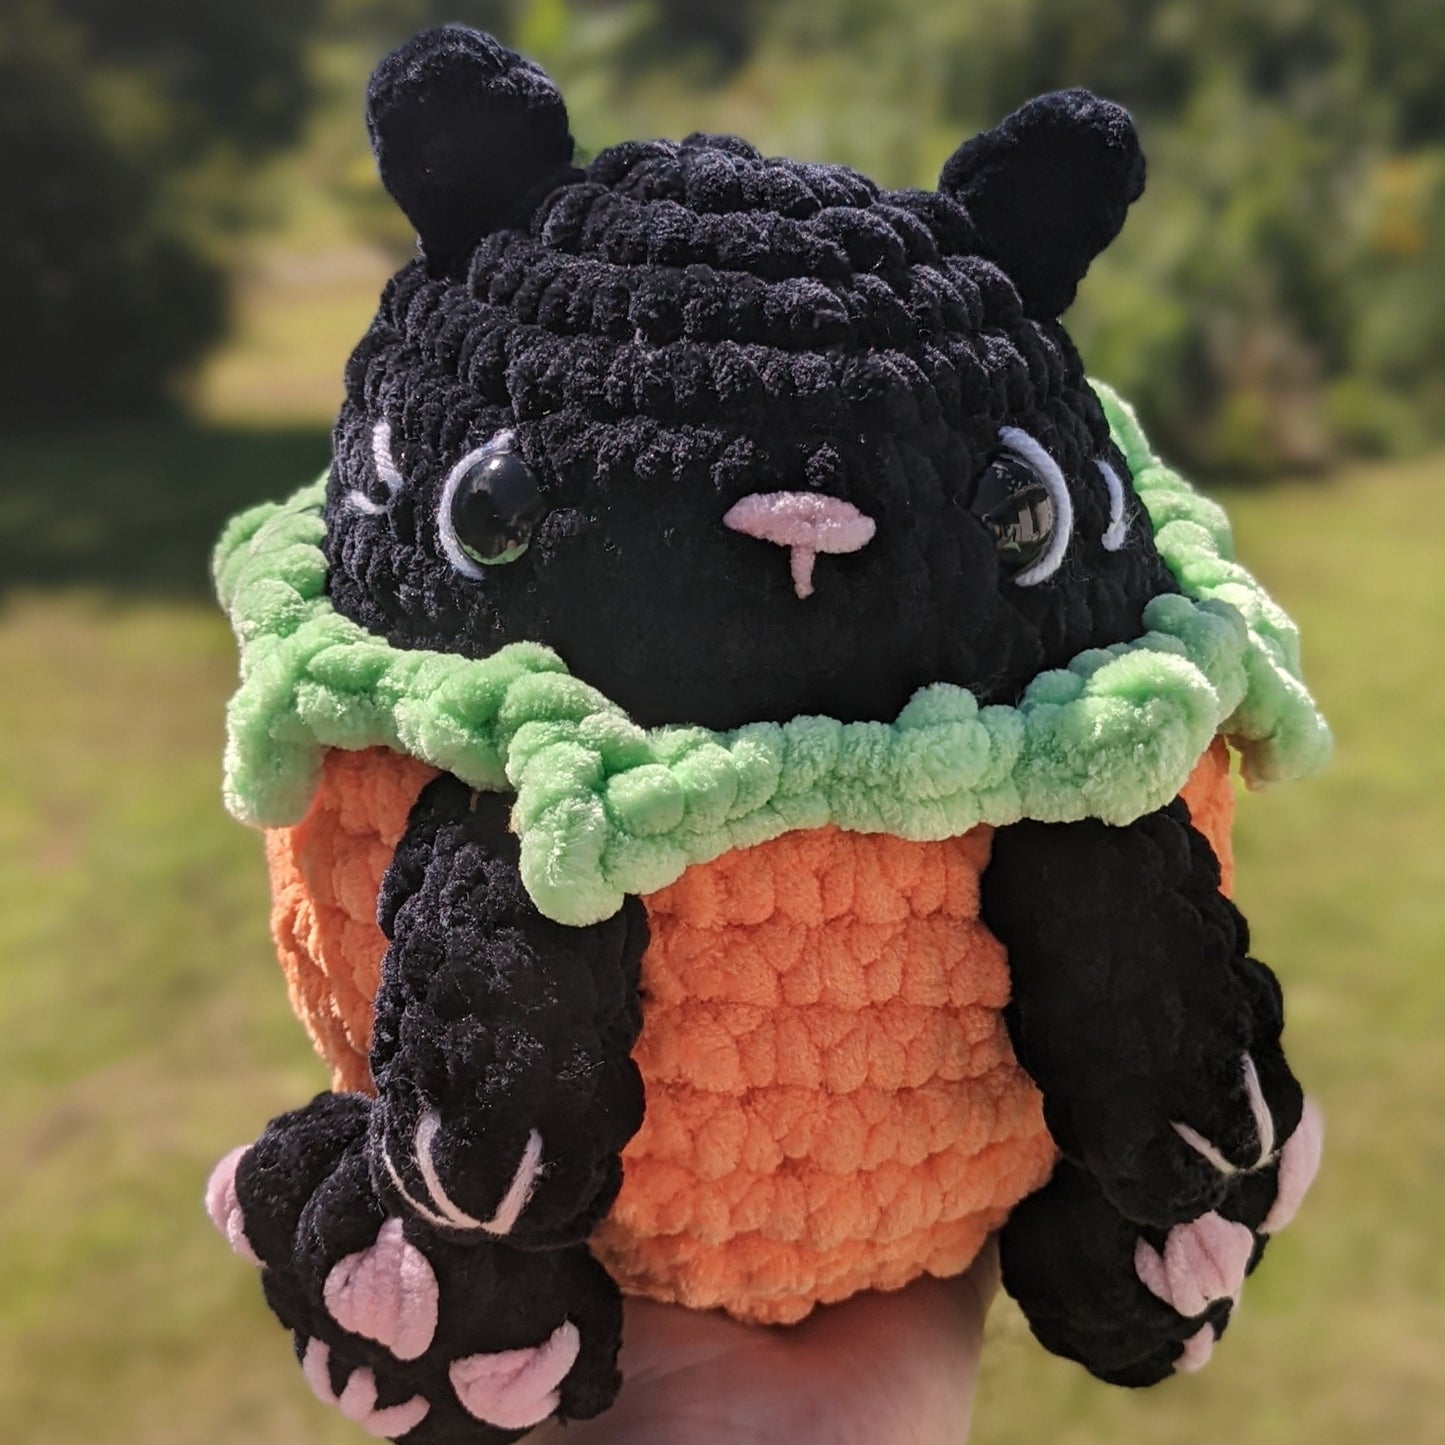 Peluche de crochet de gato gatito calabaza gigante [Archivado]